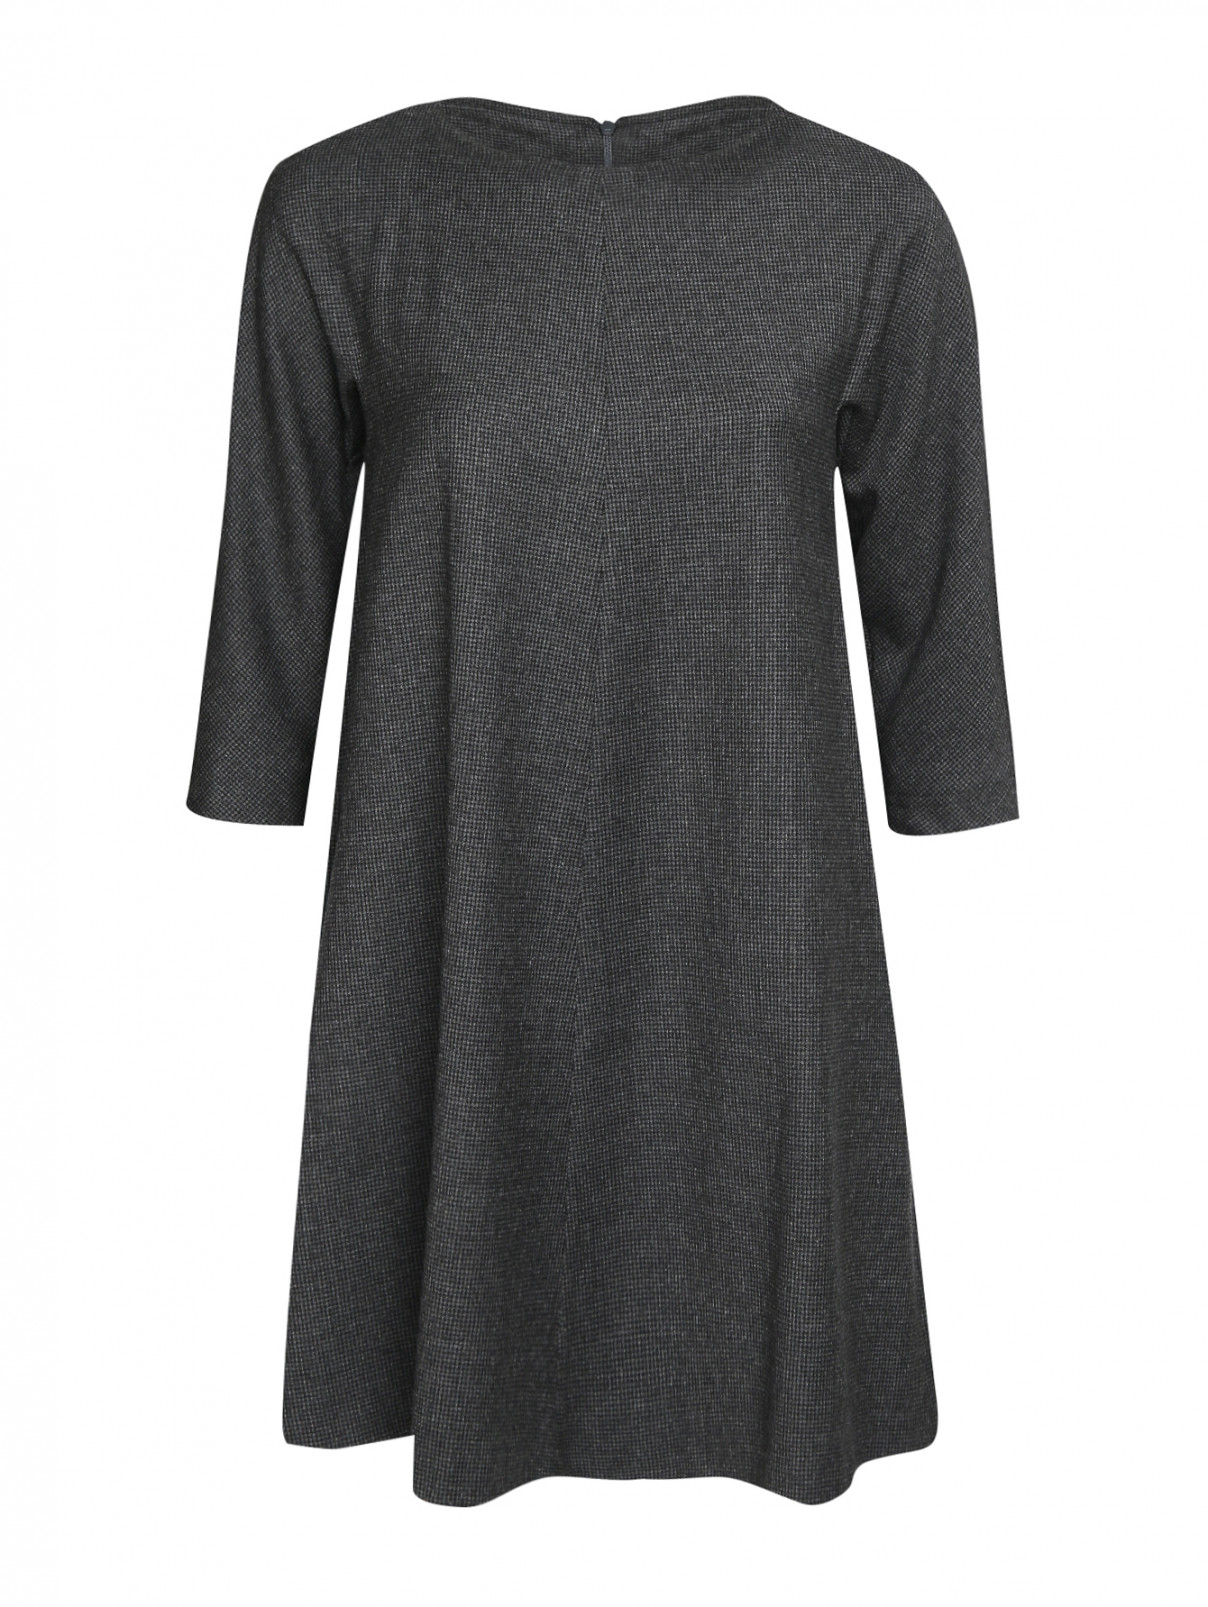 Платье свободного кроя из шерсти, с узором Weekend Max Mara  –  Общий вид  – Цвет:  Черный